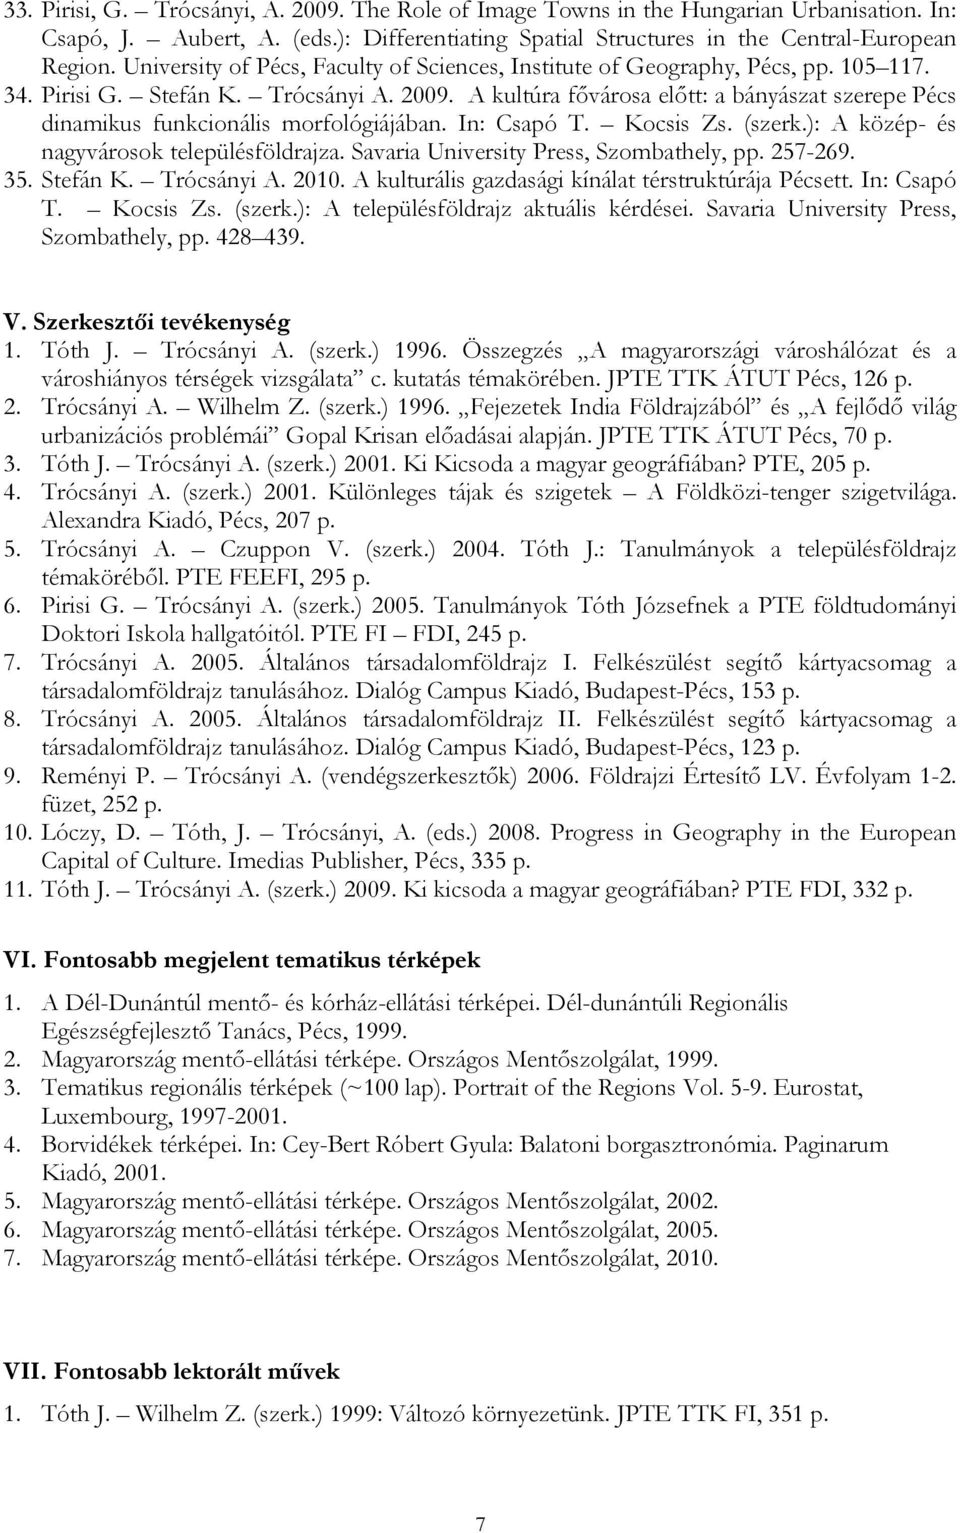 Publikációs tevékenység és idézettség ( ) - PDF Ingyenes letöltés